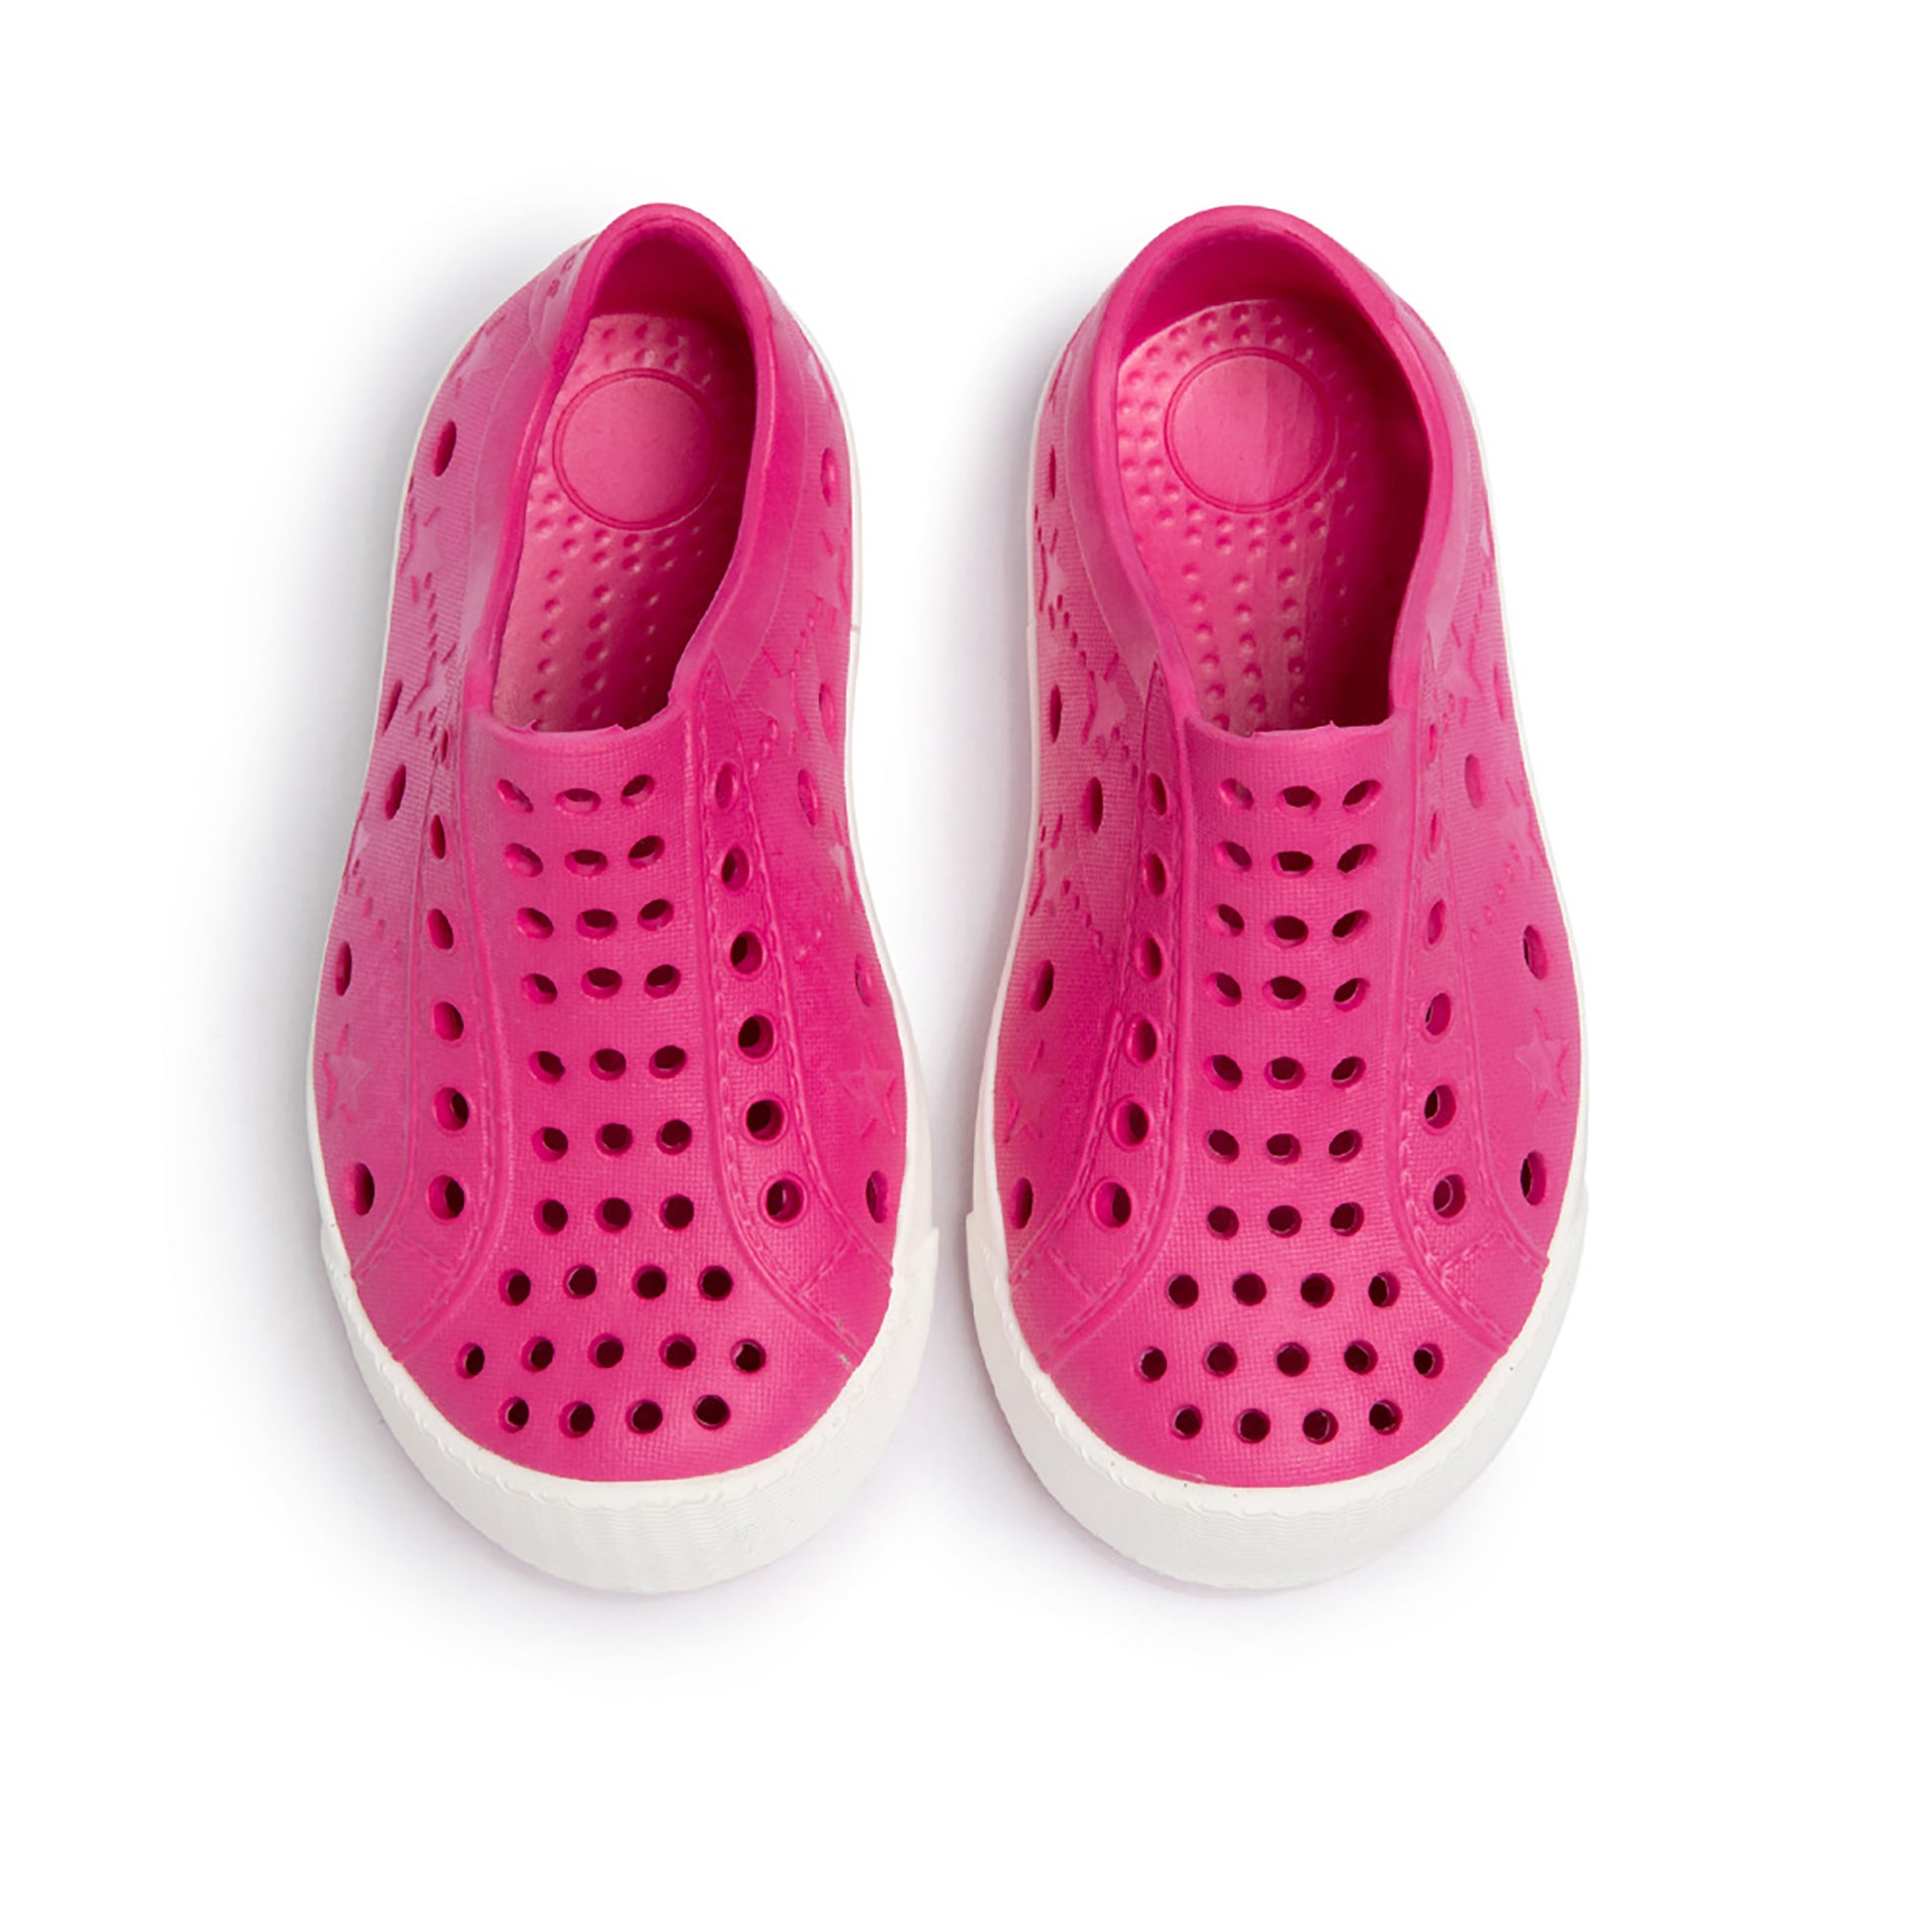 TRENT STREET Waterproof Sneakers - Shop Online | shooshoos.co.za